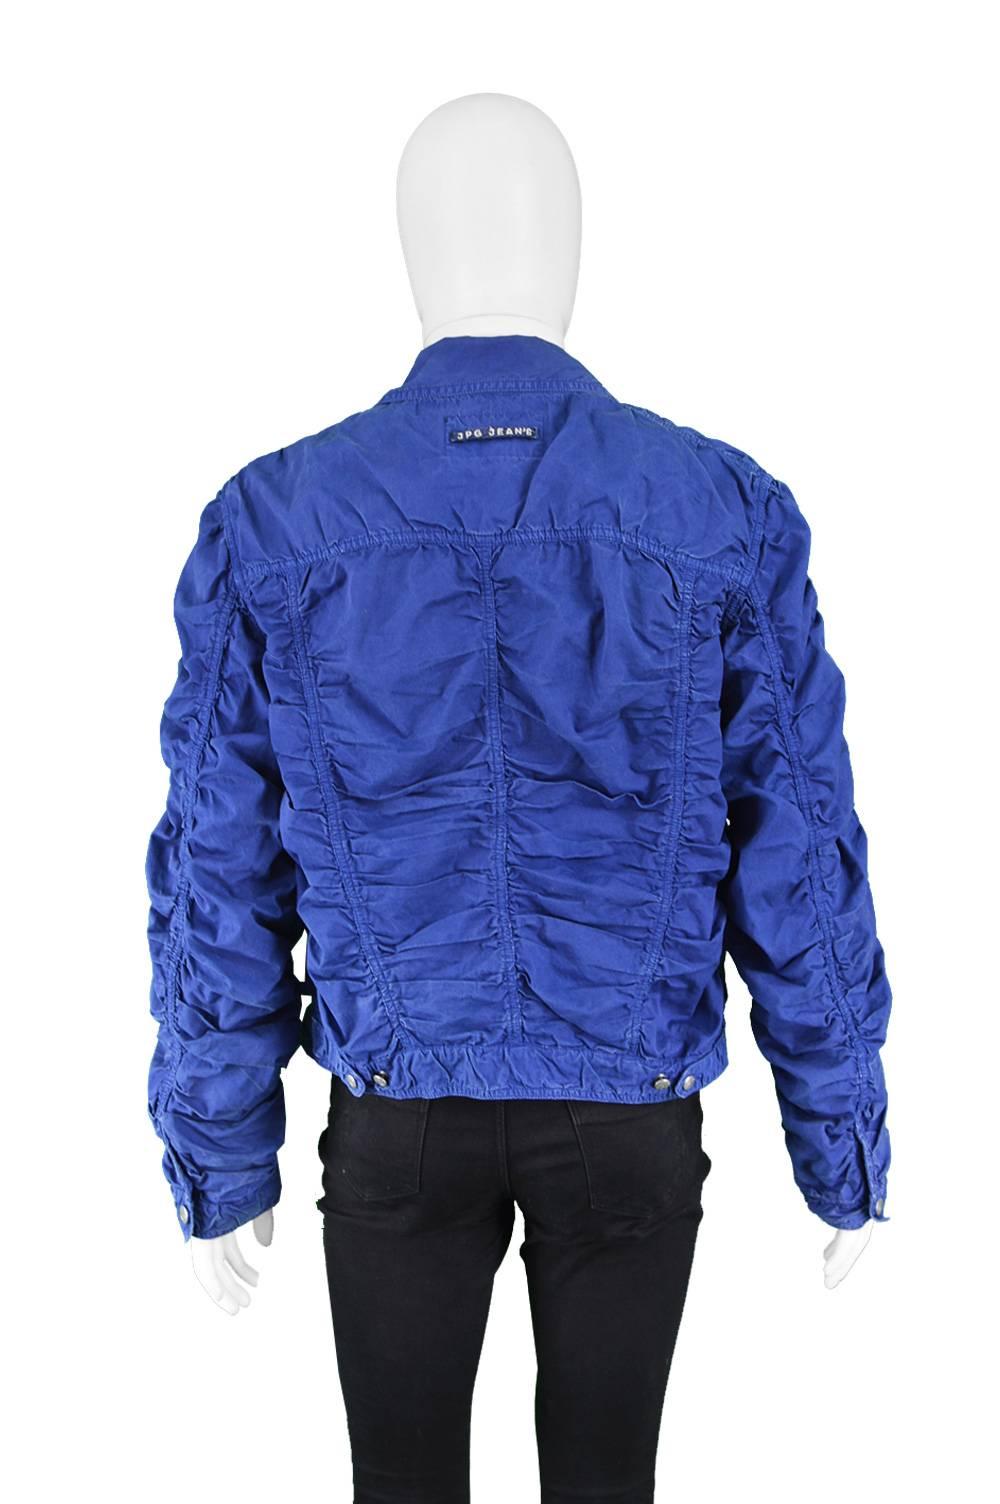 Jean Paul Gaultier Men's Vintage Ruched Blue Cotton Jacket, 1990s  For Sale 4